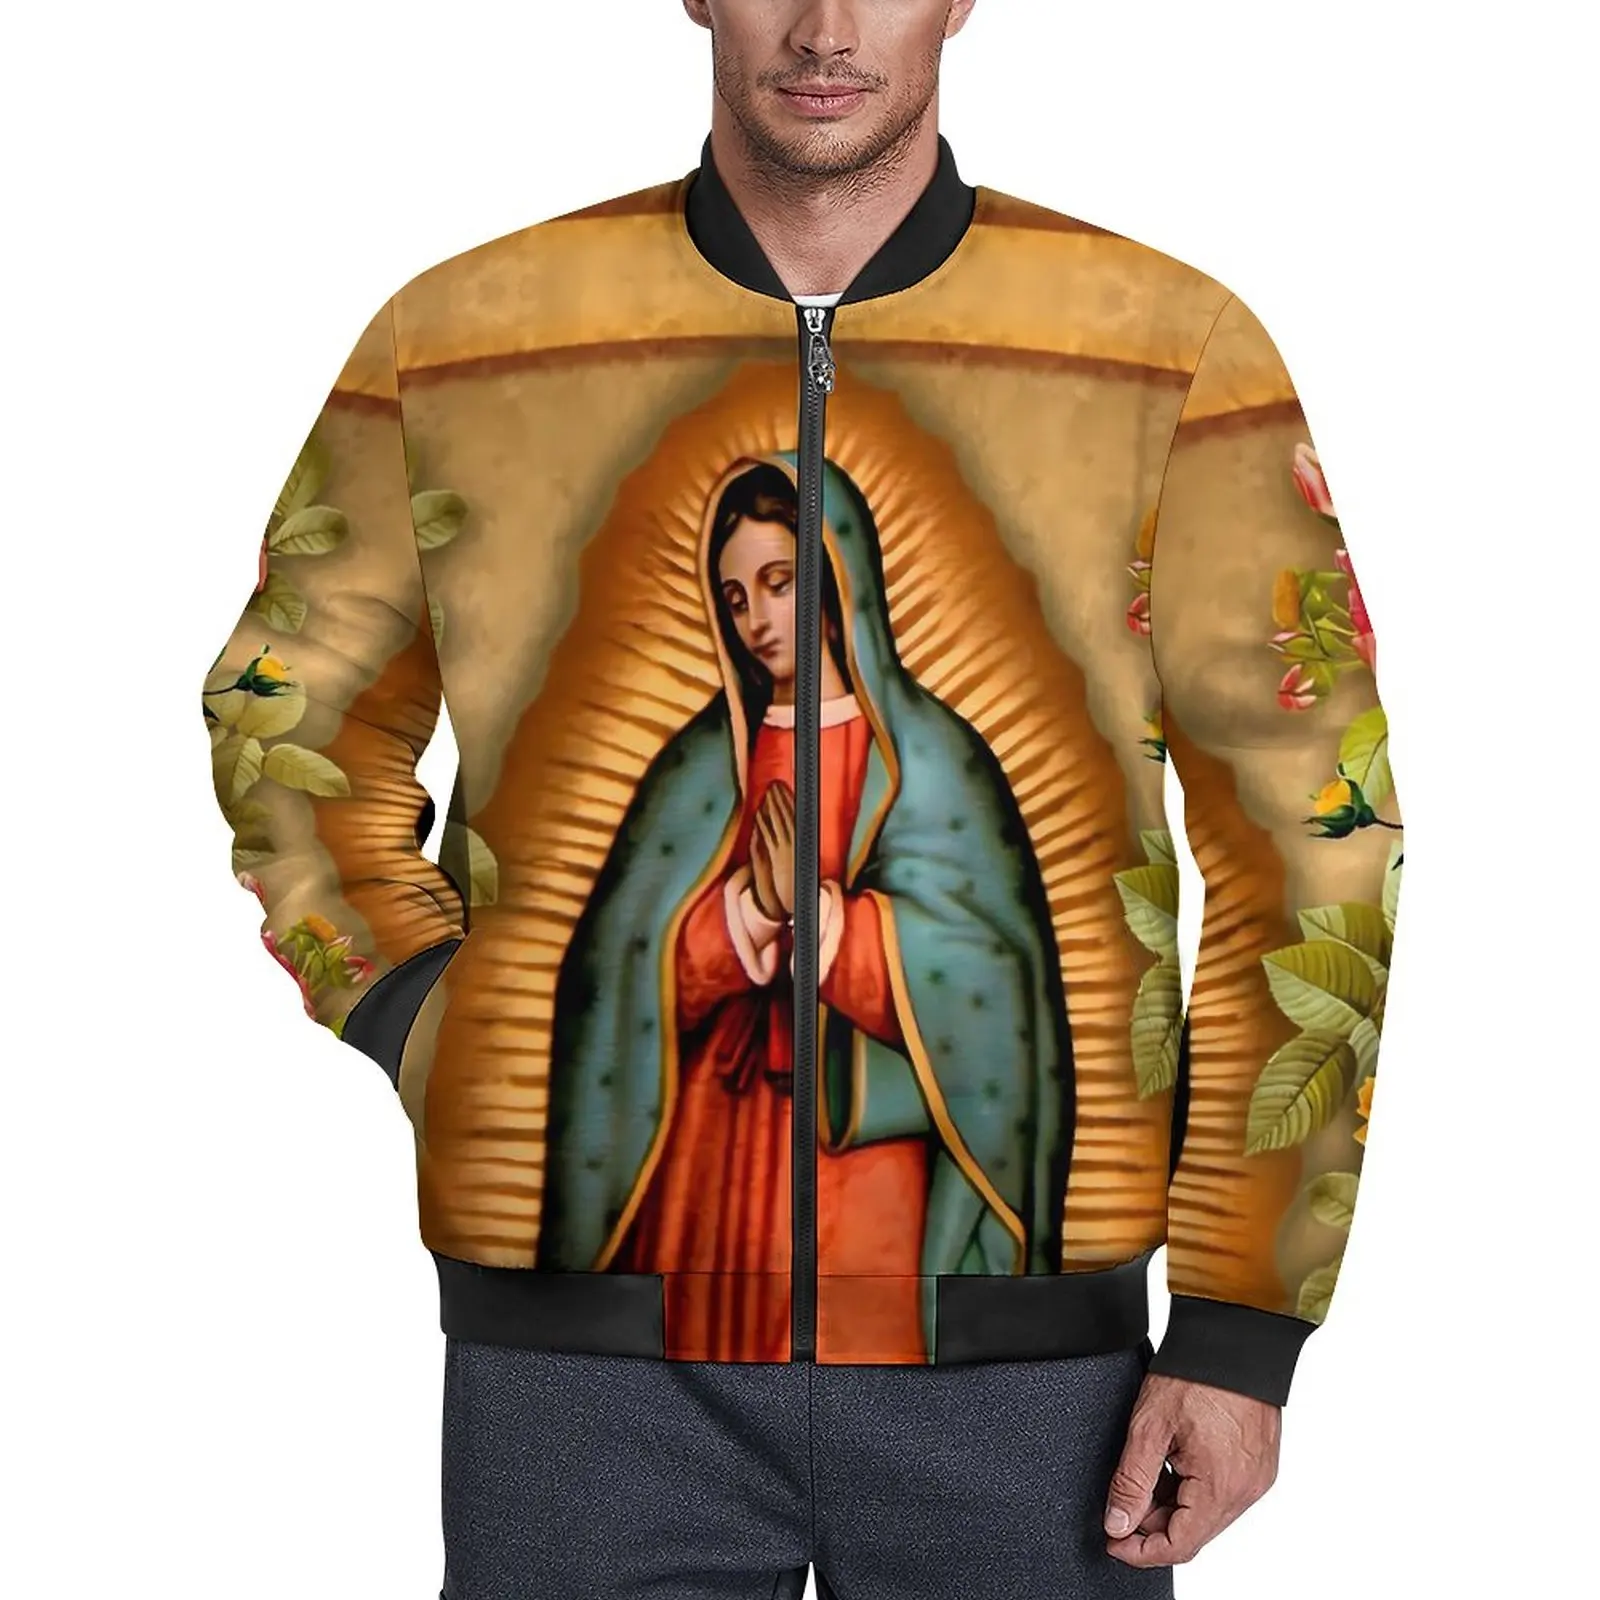 

Дева Мария, цветочные Куртки, Осенние современные повседневные пальто Санта-Мария, мужская верхняя одежда с капюшоном, ветровка, куртка оверсайз с графическим рисунком